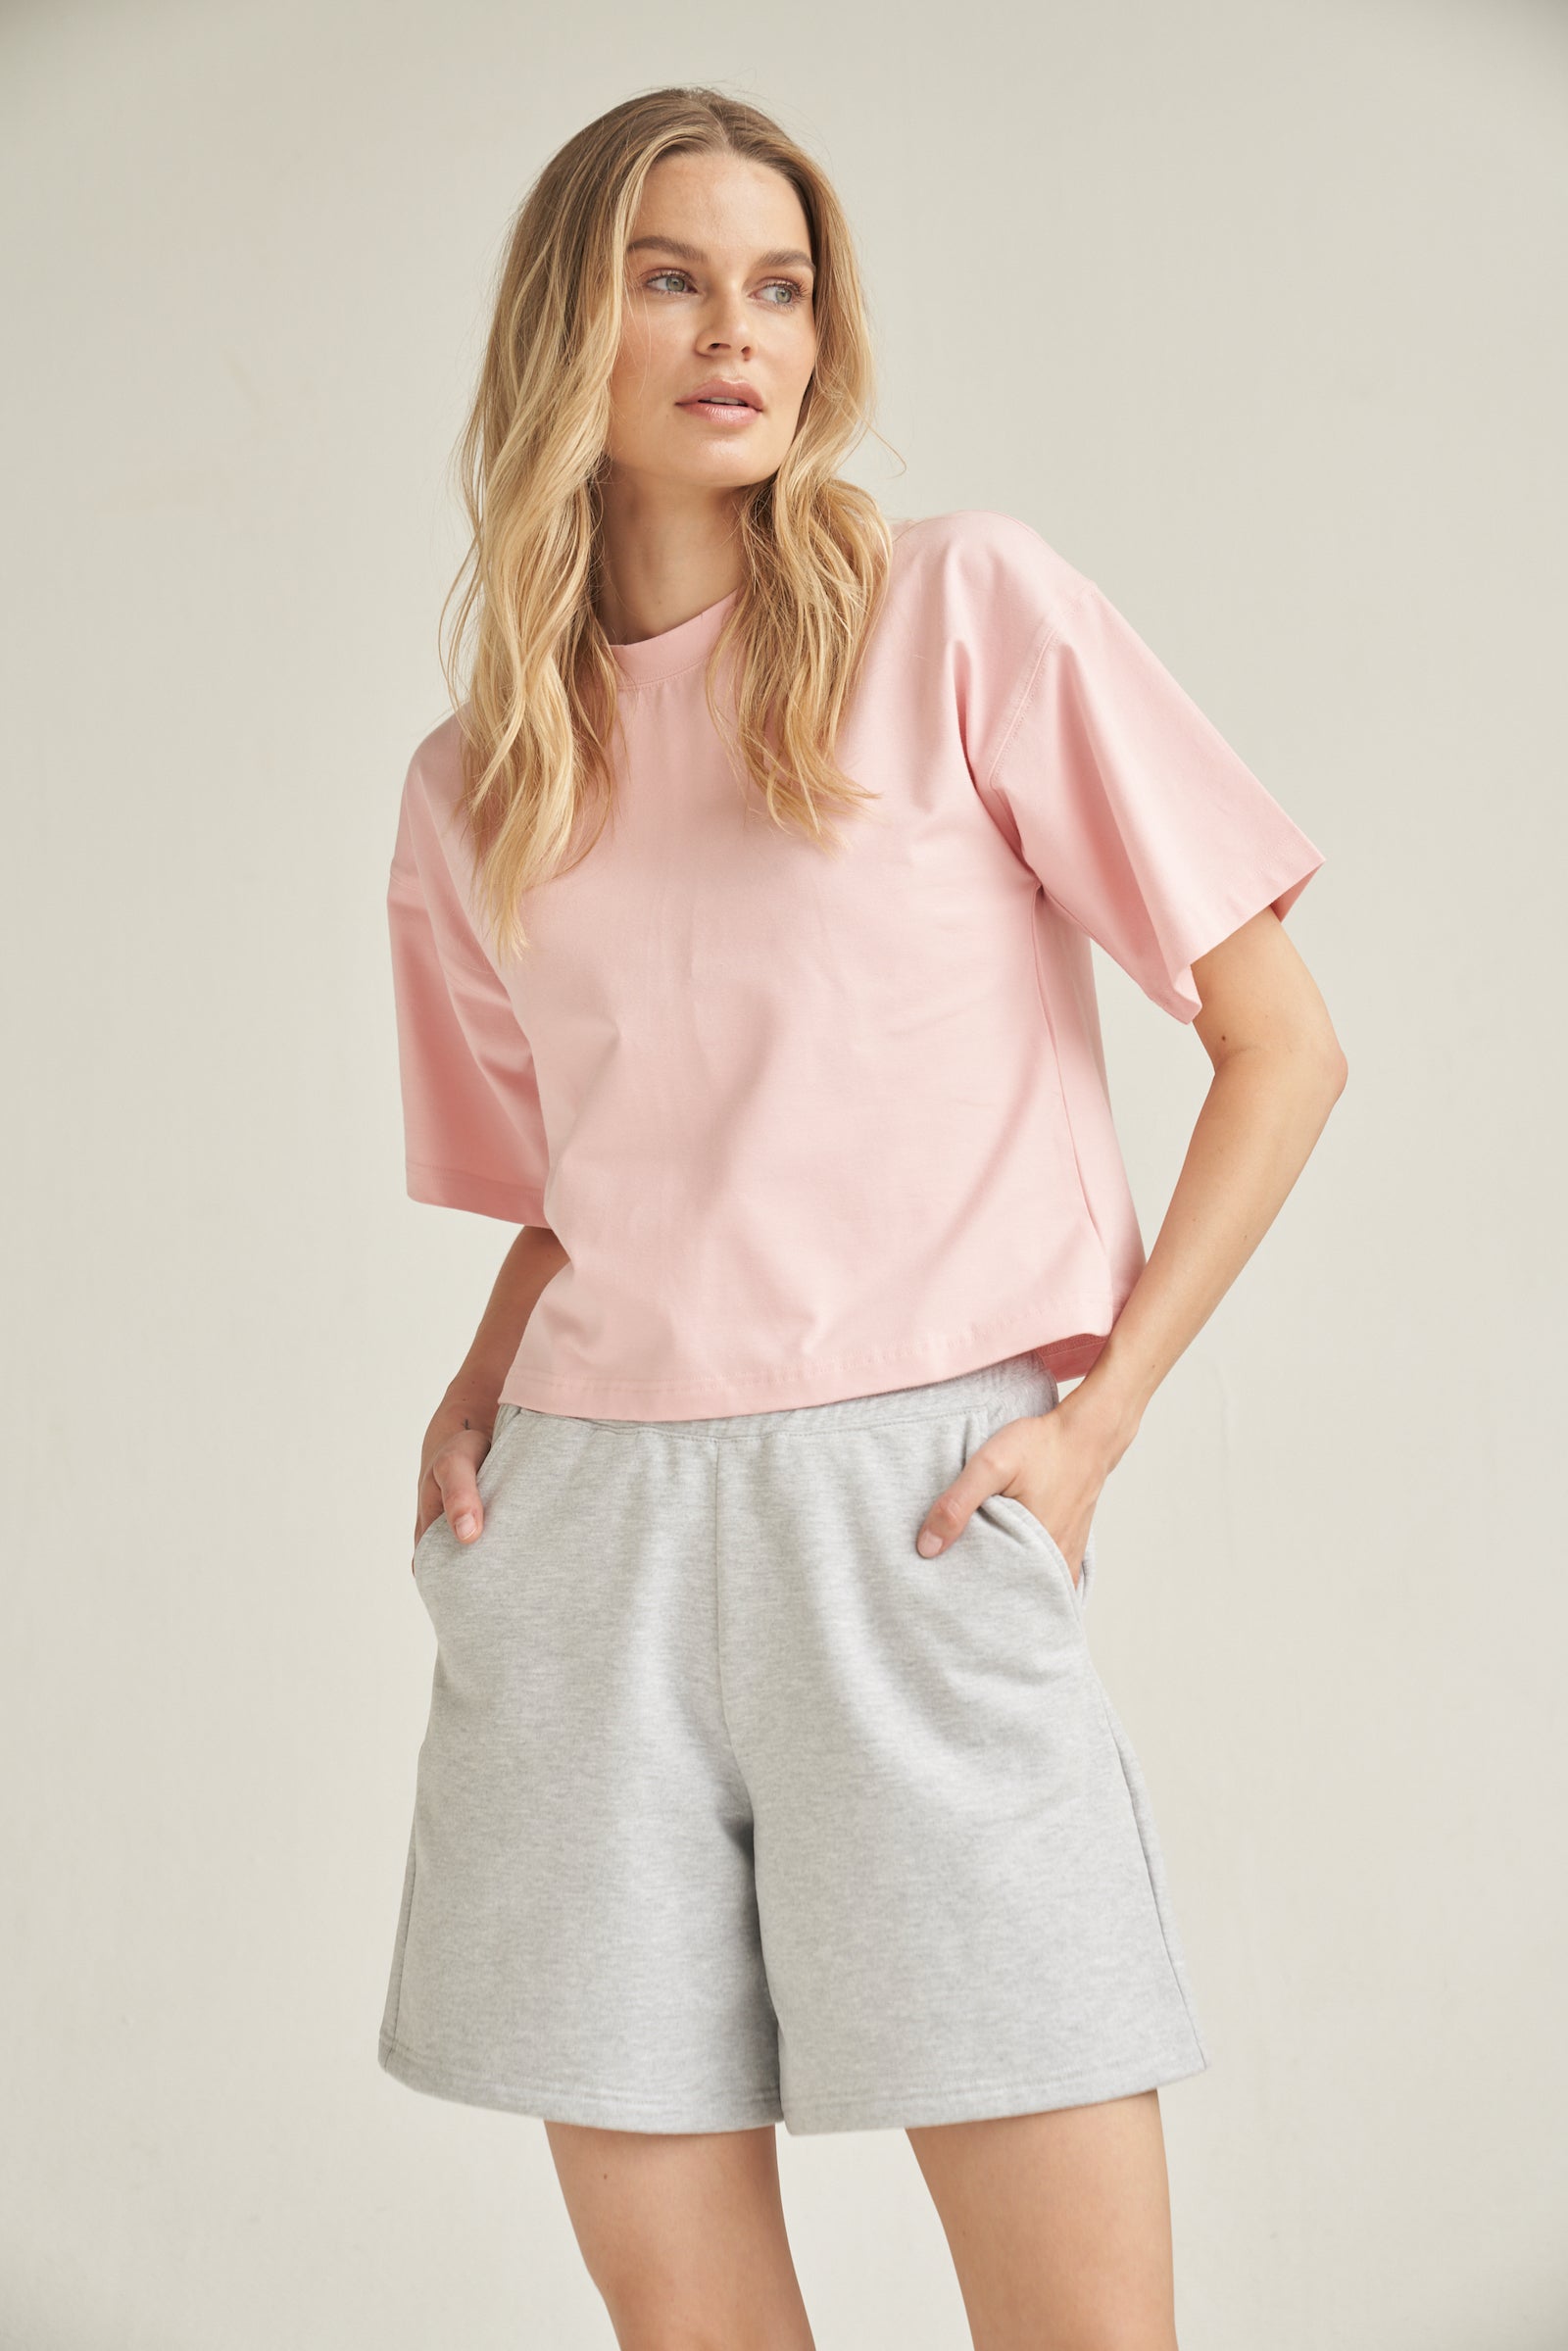 Ein blondes Model trägt eine Baumwolle-Shorts in der Farbe grau. Sie kombiniert das Outfit mit einem Shirt in rosa. Das Model steht vor einem hellen Hintergrund und ihre Hände befinden sich in den Seitentaschen der kurzen Hose.